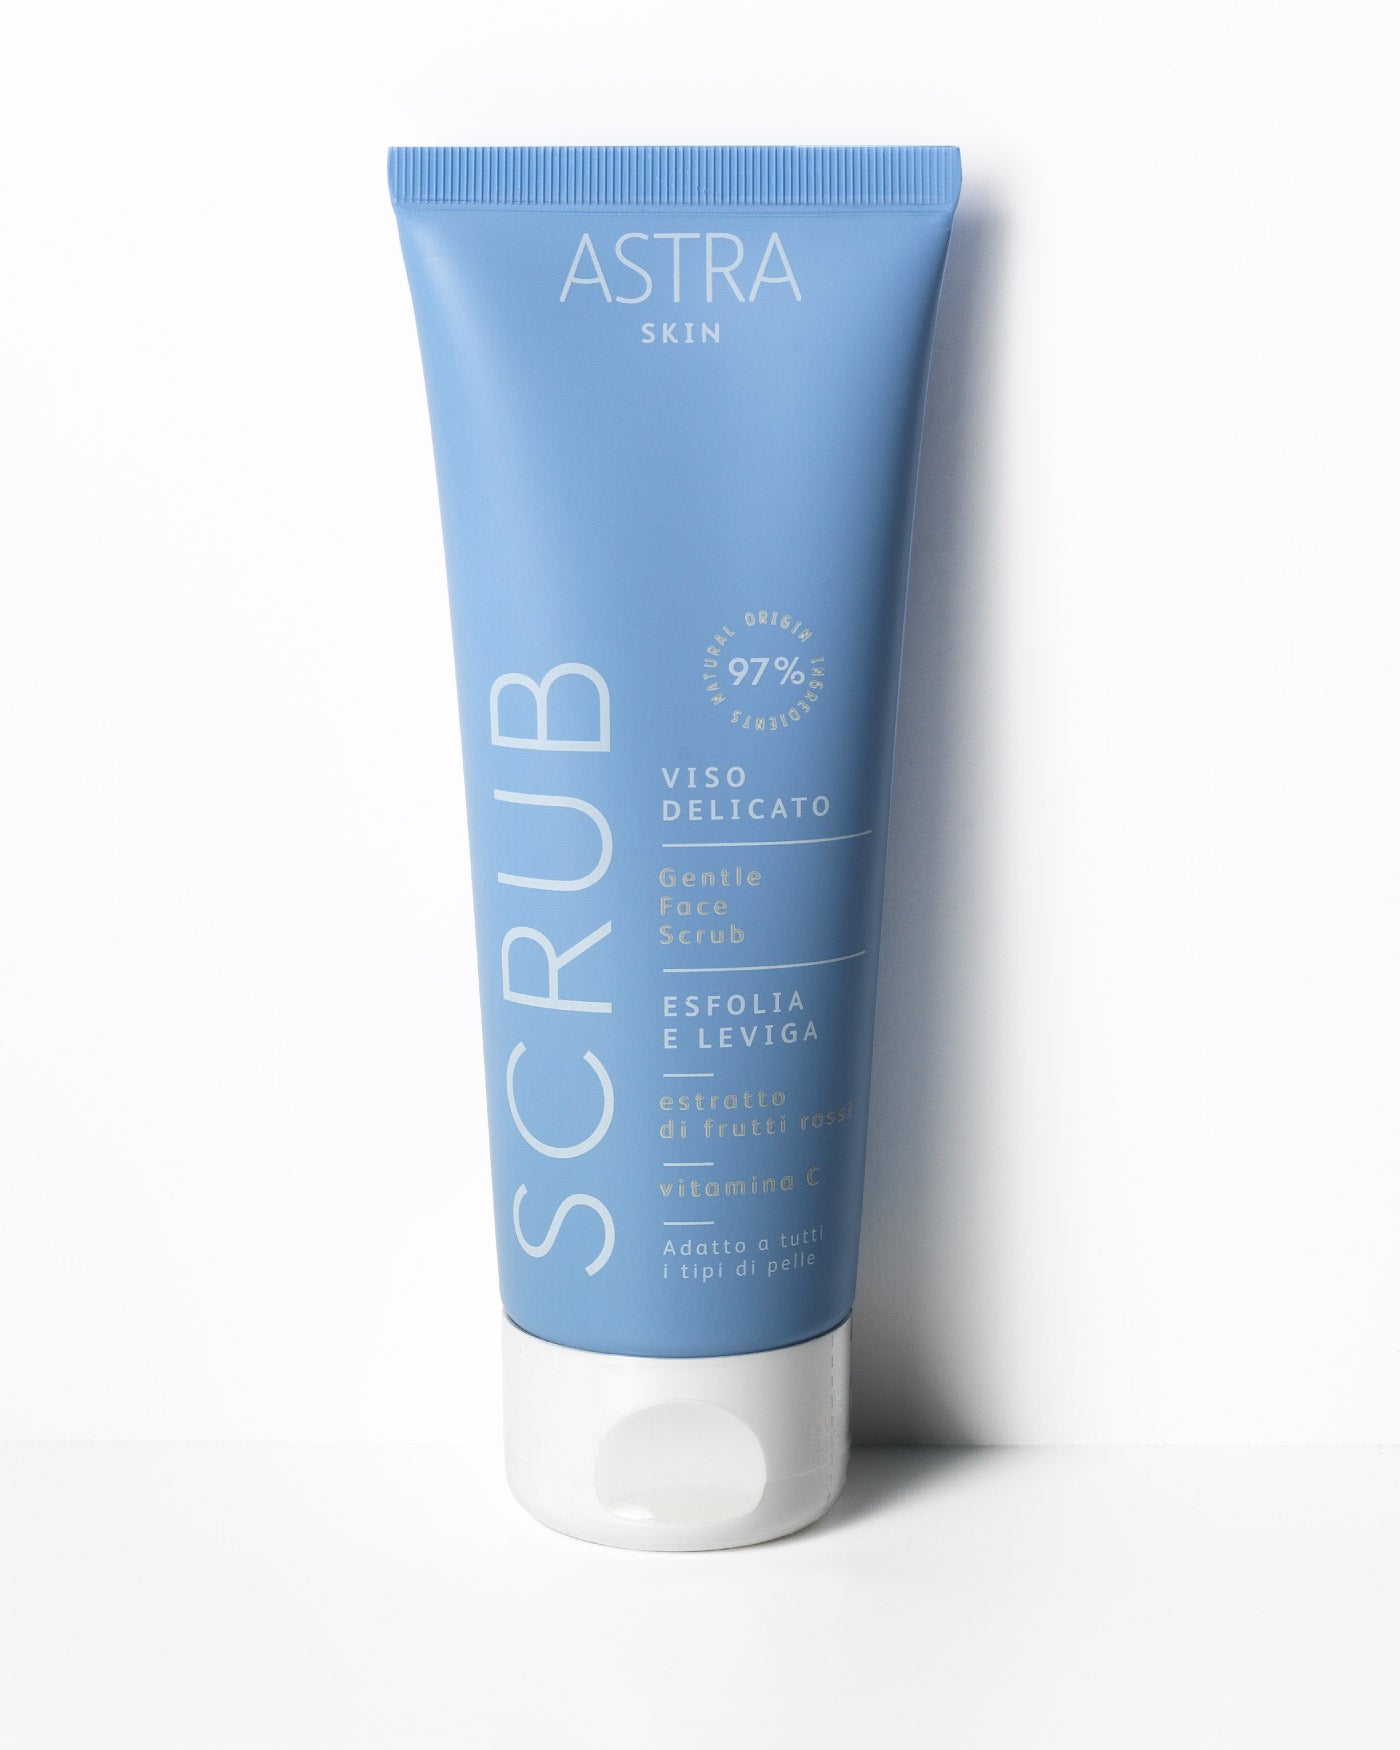 SCRUB VISO DELICATO - Scrub Viso Esfoliante - Set Skin - Pelle Oleosa - Astra Make-Up